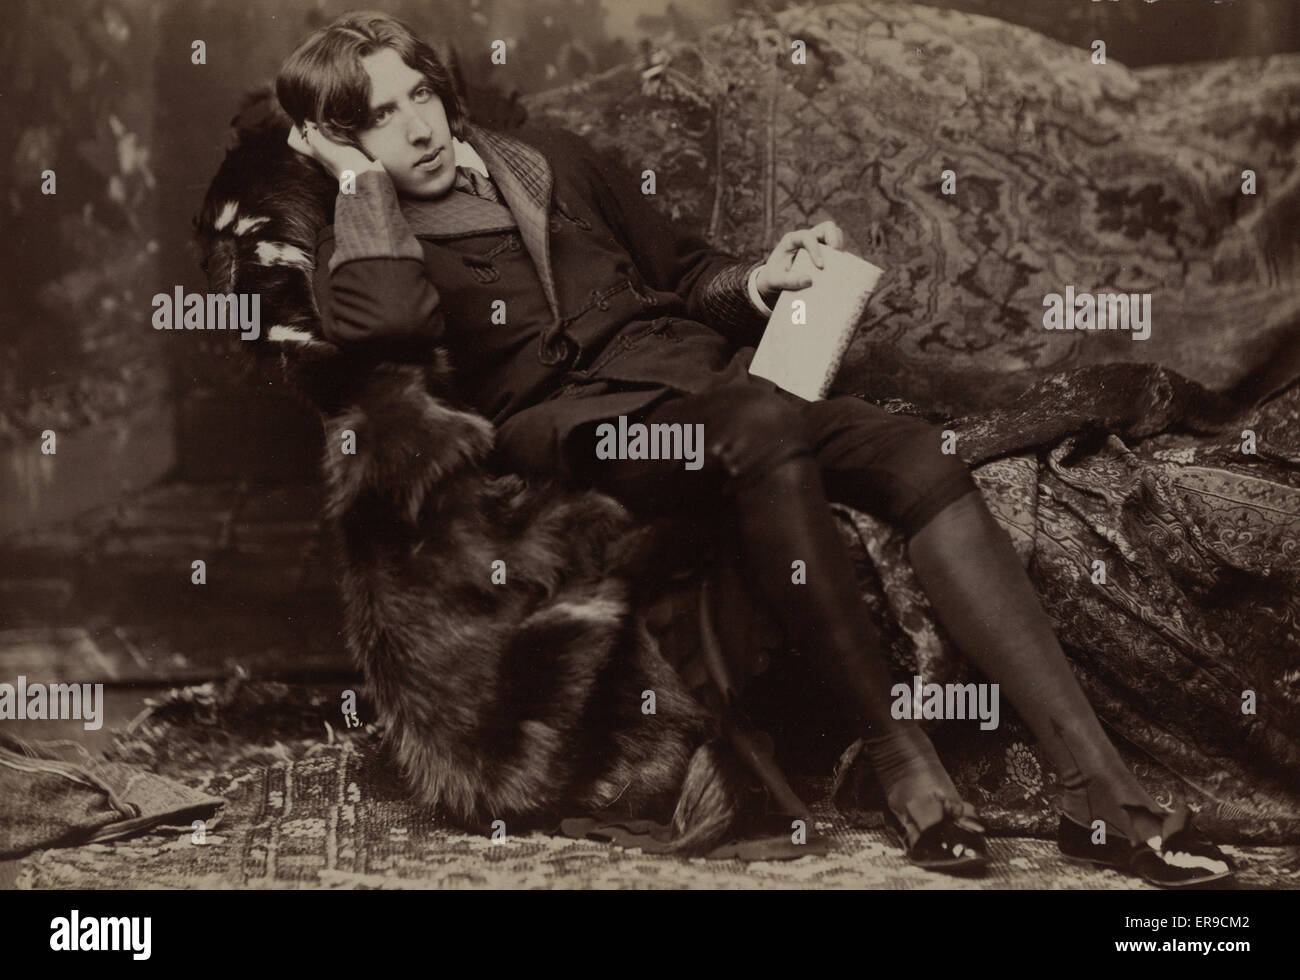 Oscar Wilde. Oscar Wilde, el retrato de longitud completa, mirando hacia la derecha, sentado en una silla, la mano derecha en la mejilla izquierda, la celebración de libro. Fecha c1882. Foto de stock